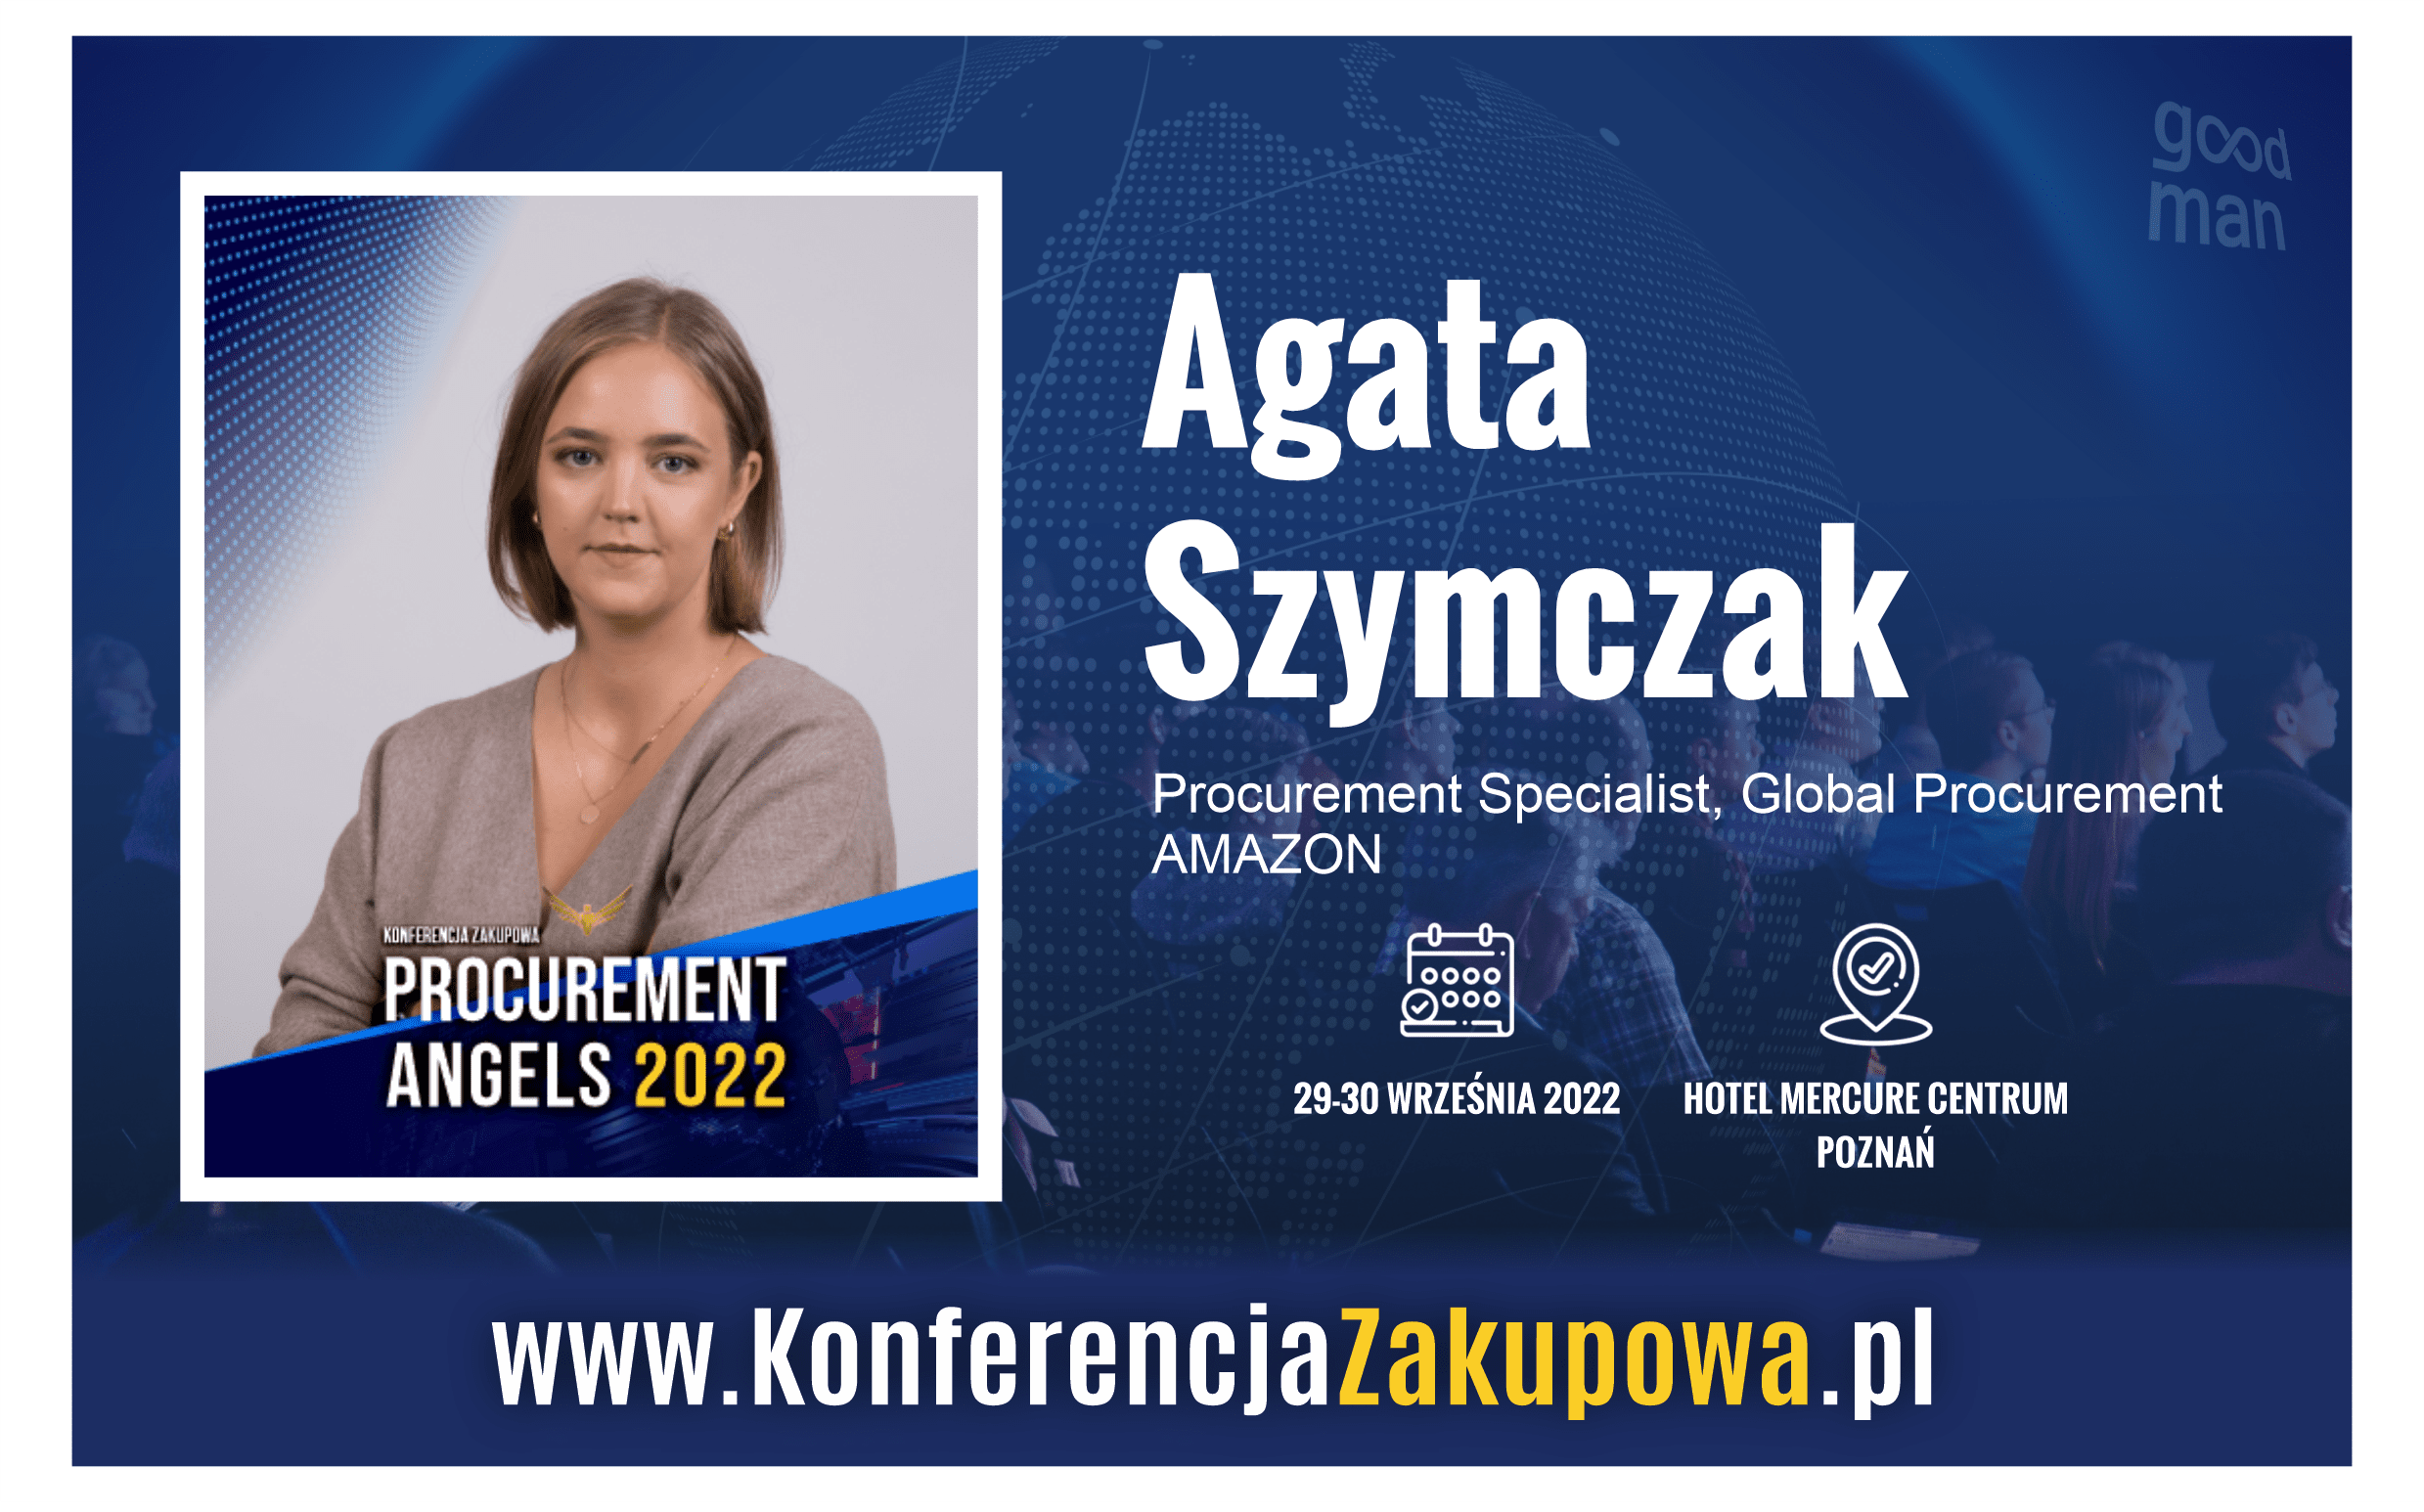 agata szymczak konferencja zakupowa procurment conference poland 2022